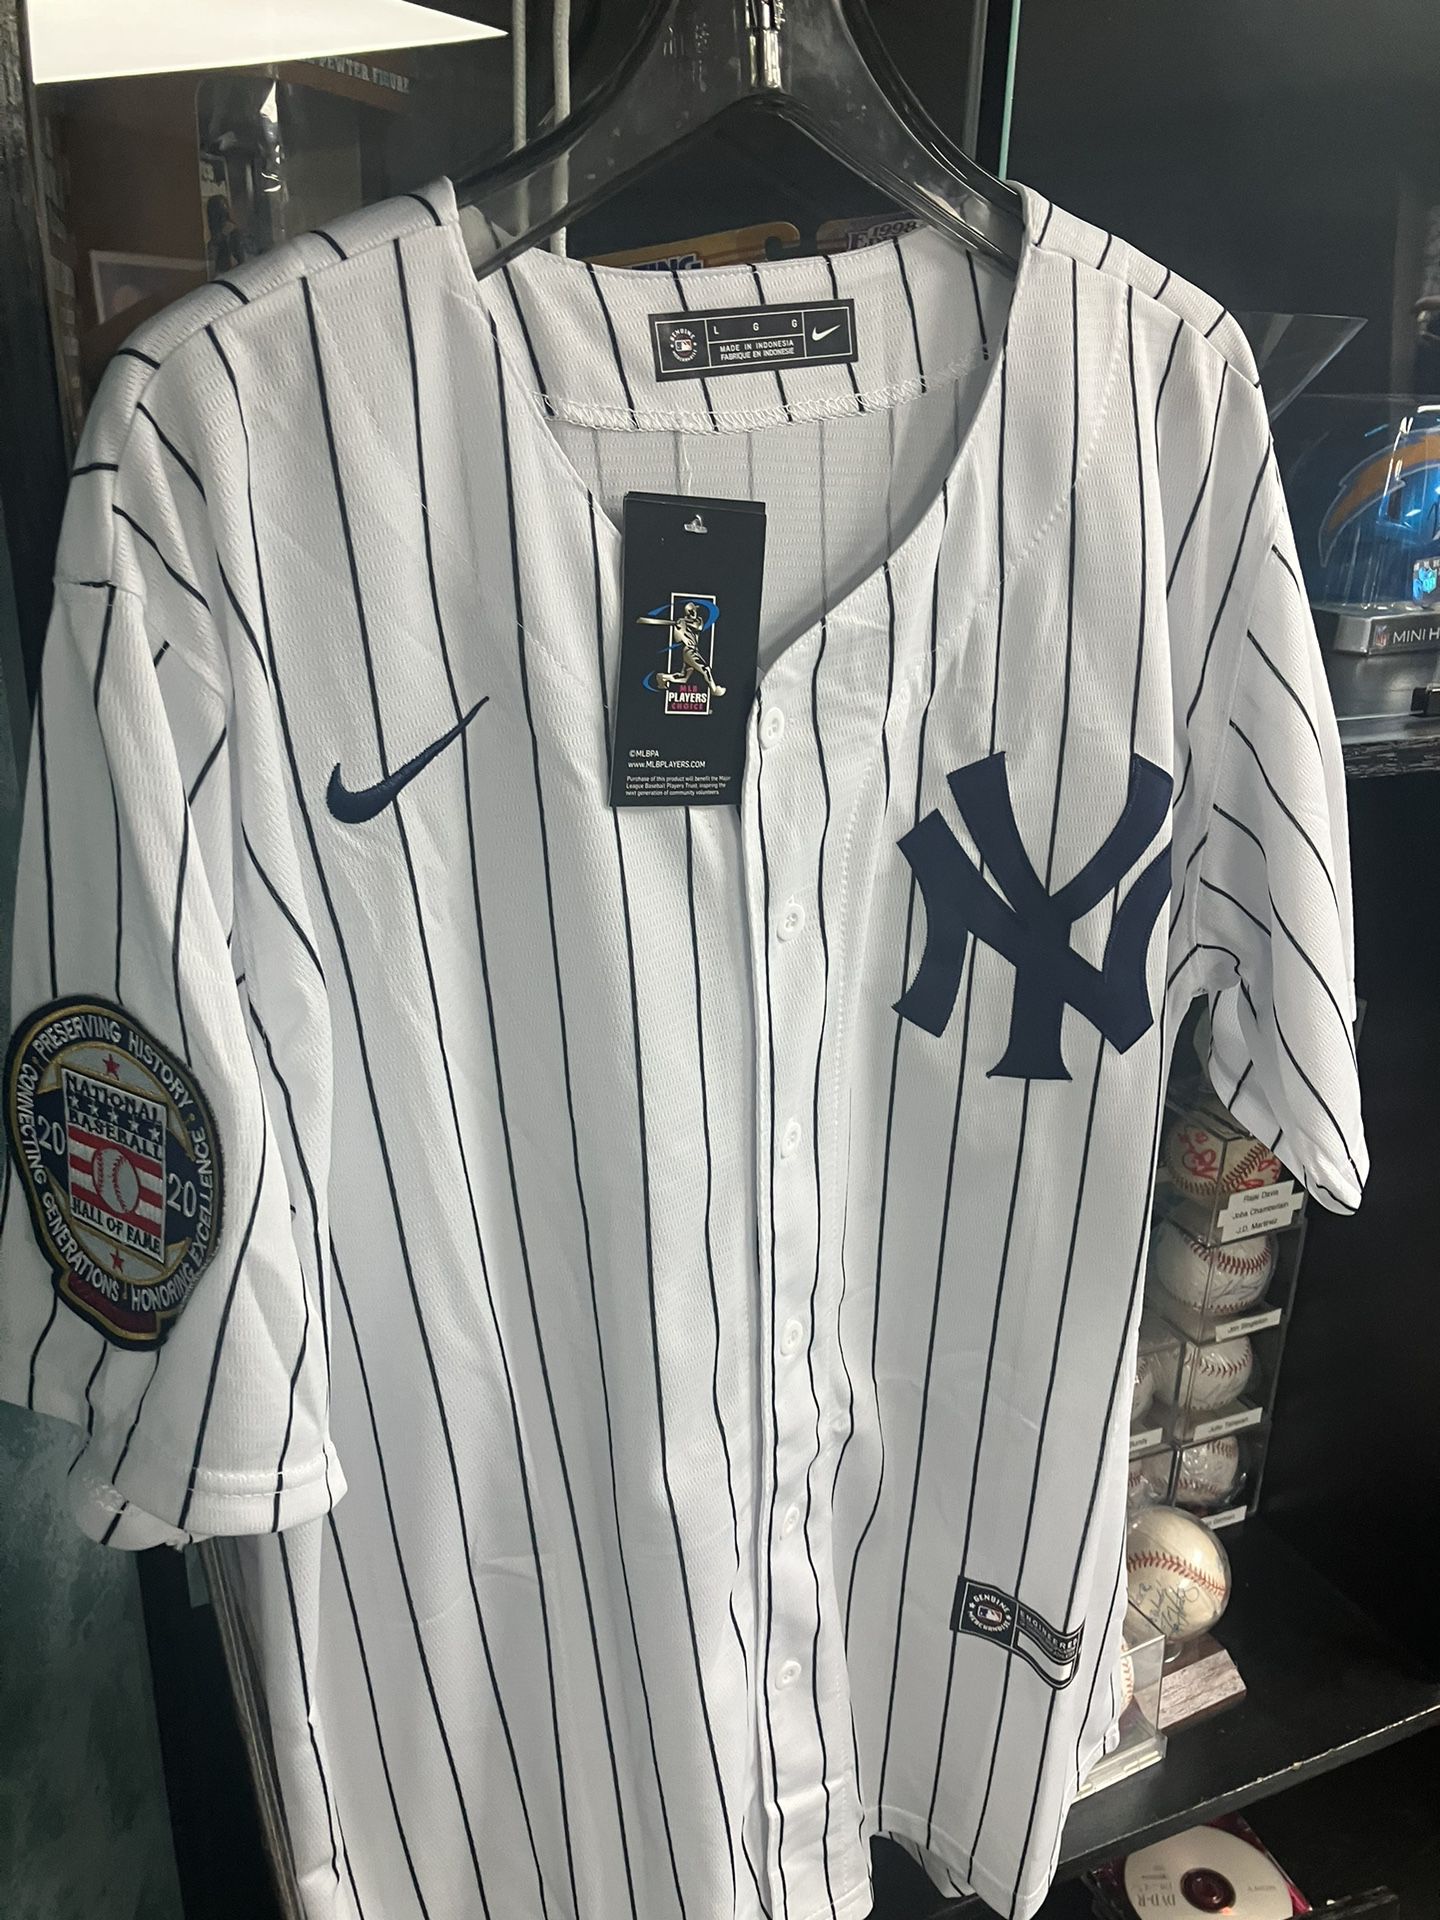 Derek Jeter MLB Fan Jerseys for sale